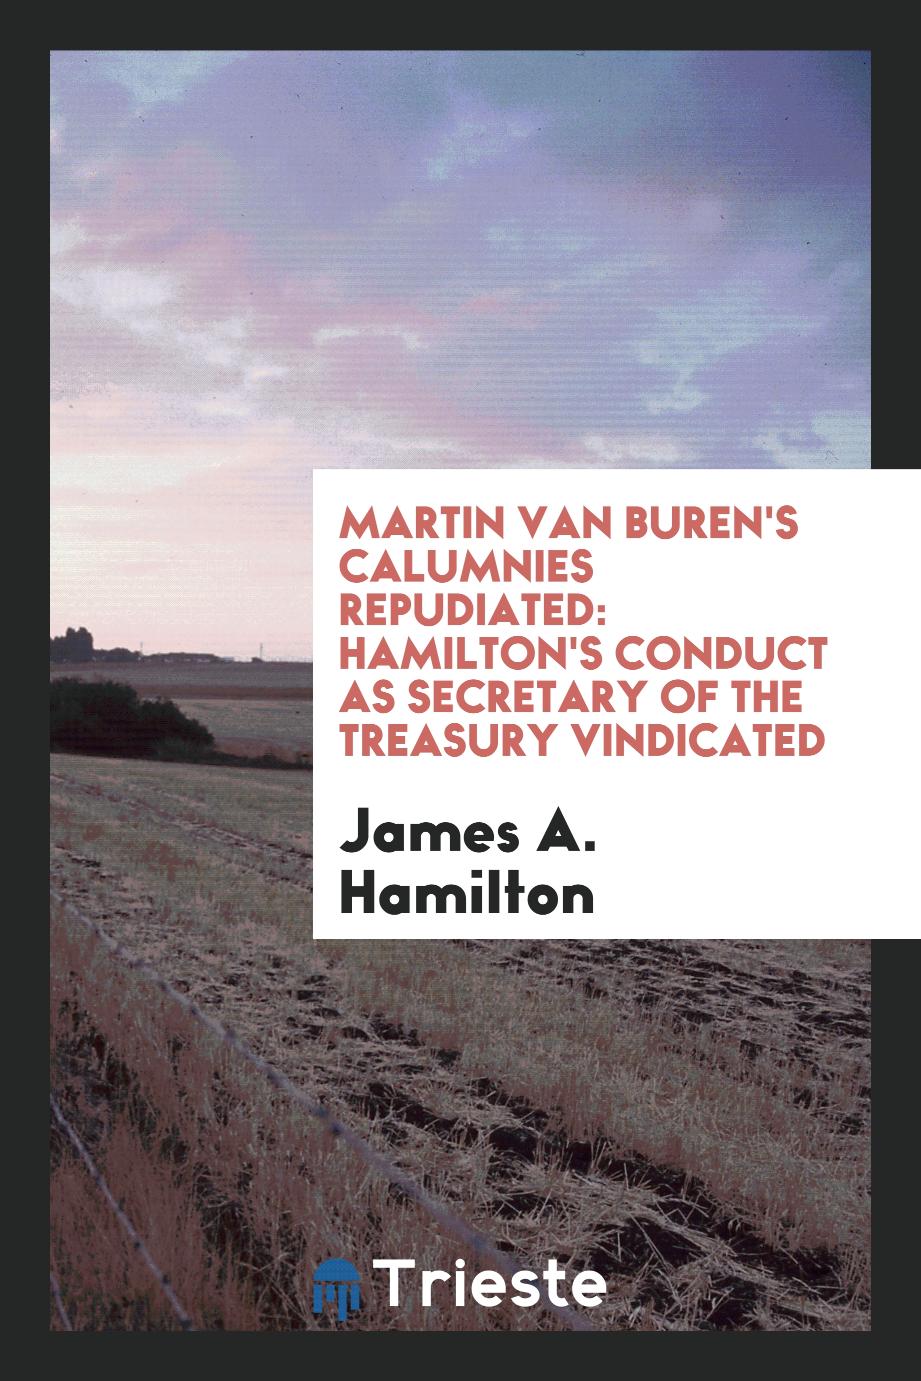 Martin Van Buren's Calumnies Repudiated: Hamilton's Conduct as Secretary of the Treasury Vindicated